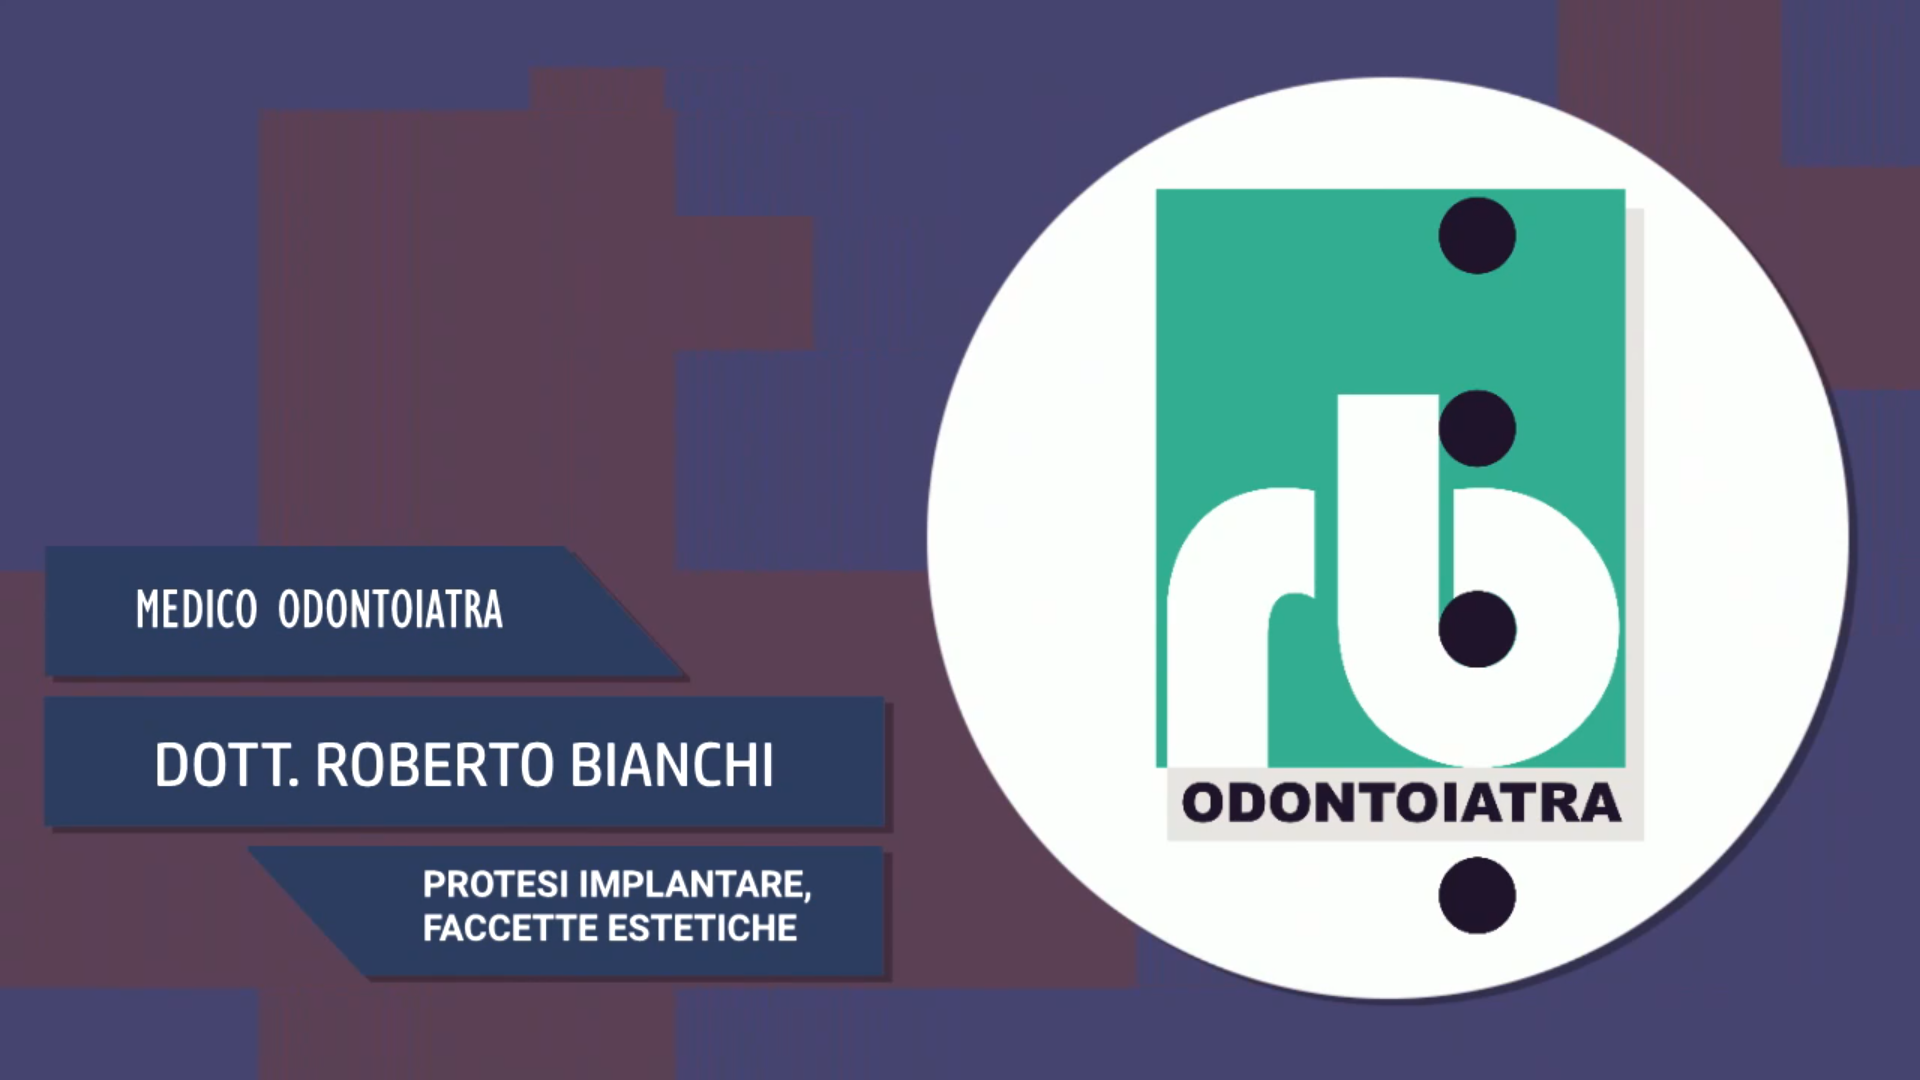 Intervista al Dott. Roberto Bianchi – Protesi implantare, faccette estetiche